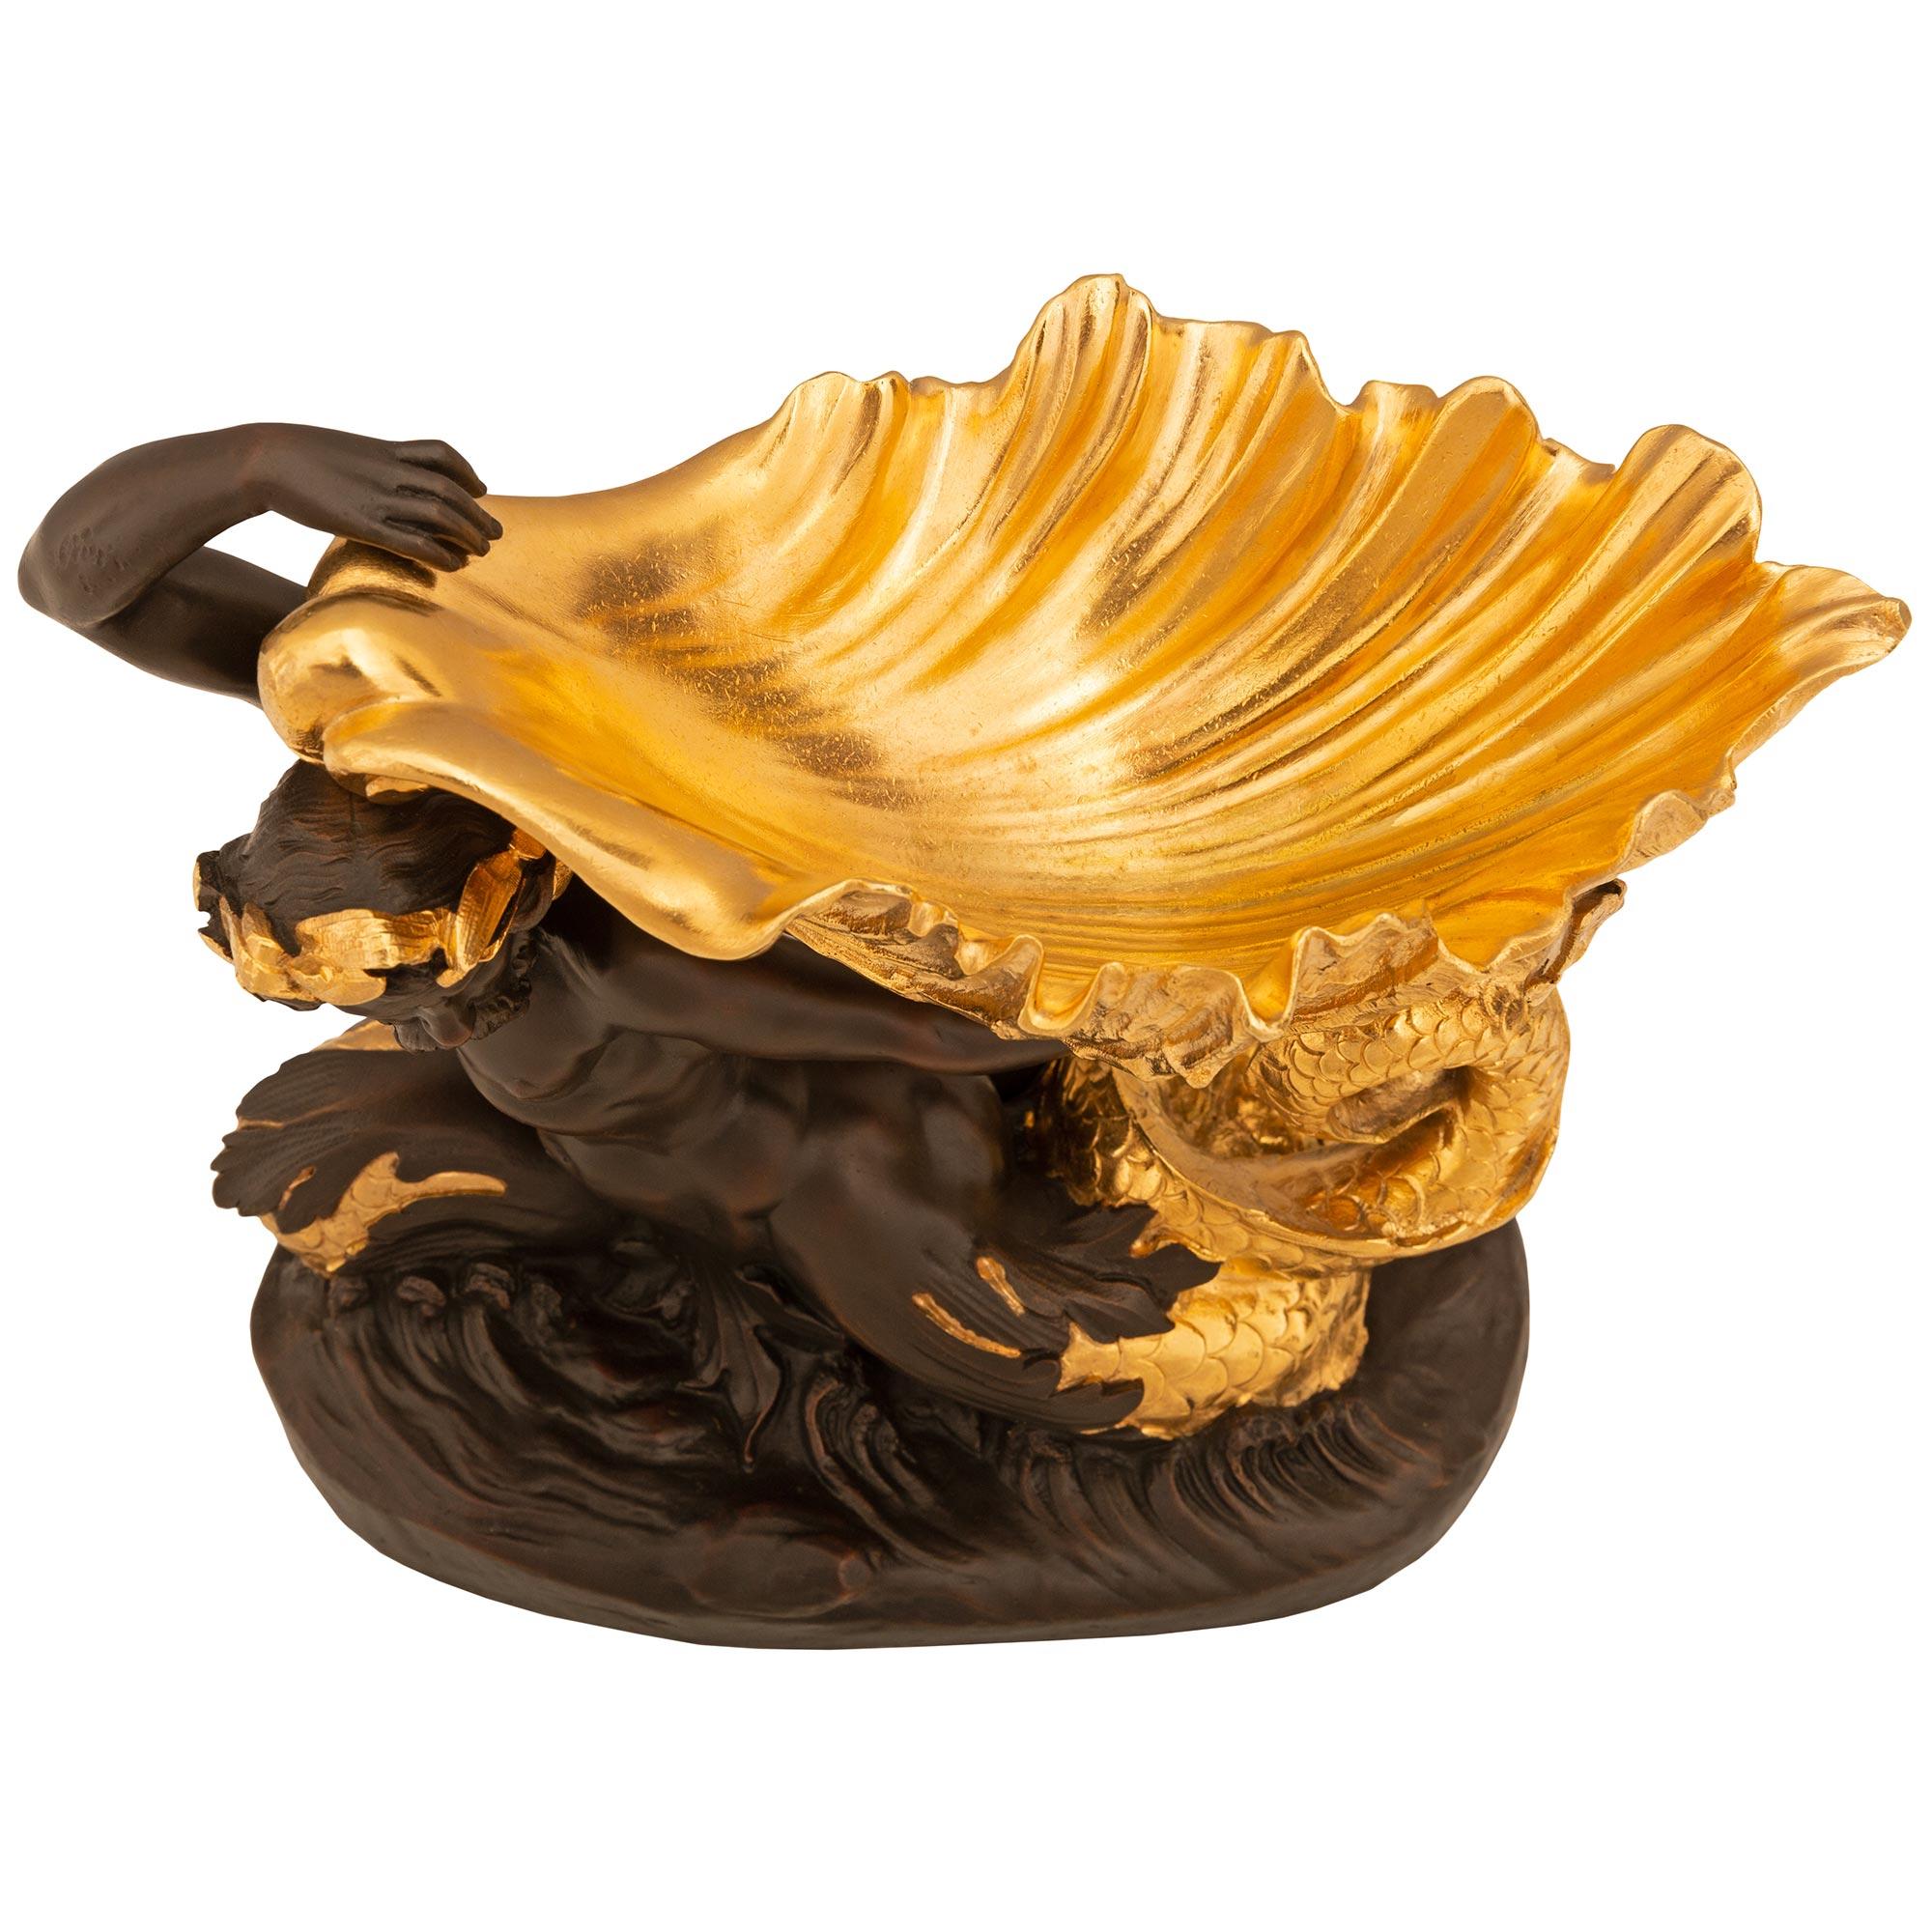 Une très belle urne en bronze patiné et bronze doré de style Renaissance du 19ème siècle. L'urne est surélevée par une base ovale avec un homme en bronze patiné nageant au-dessus des vagues. Les écailles merveilleusement détaillées de sa queue sont